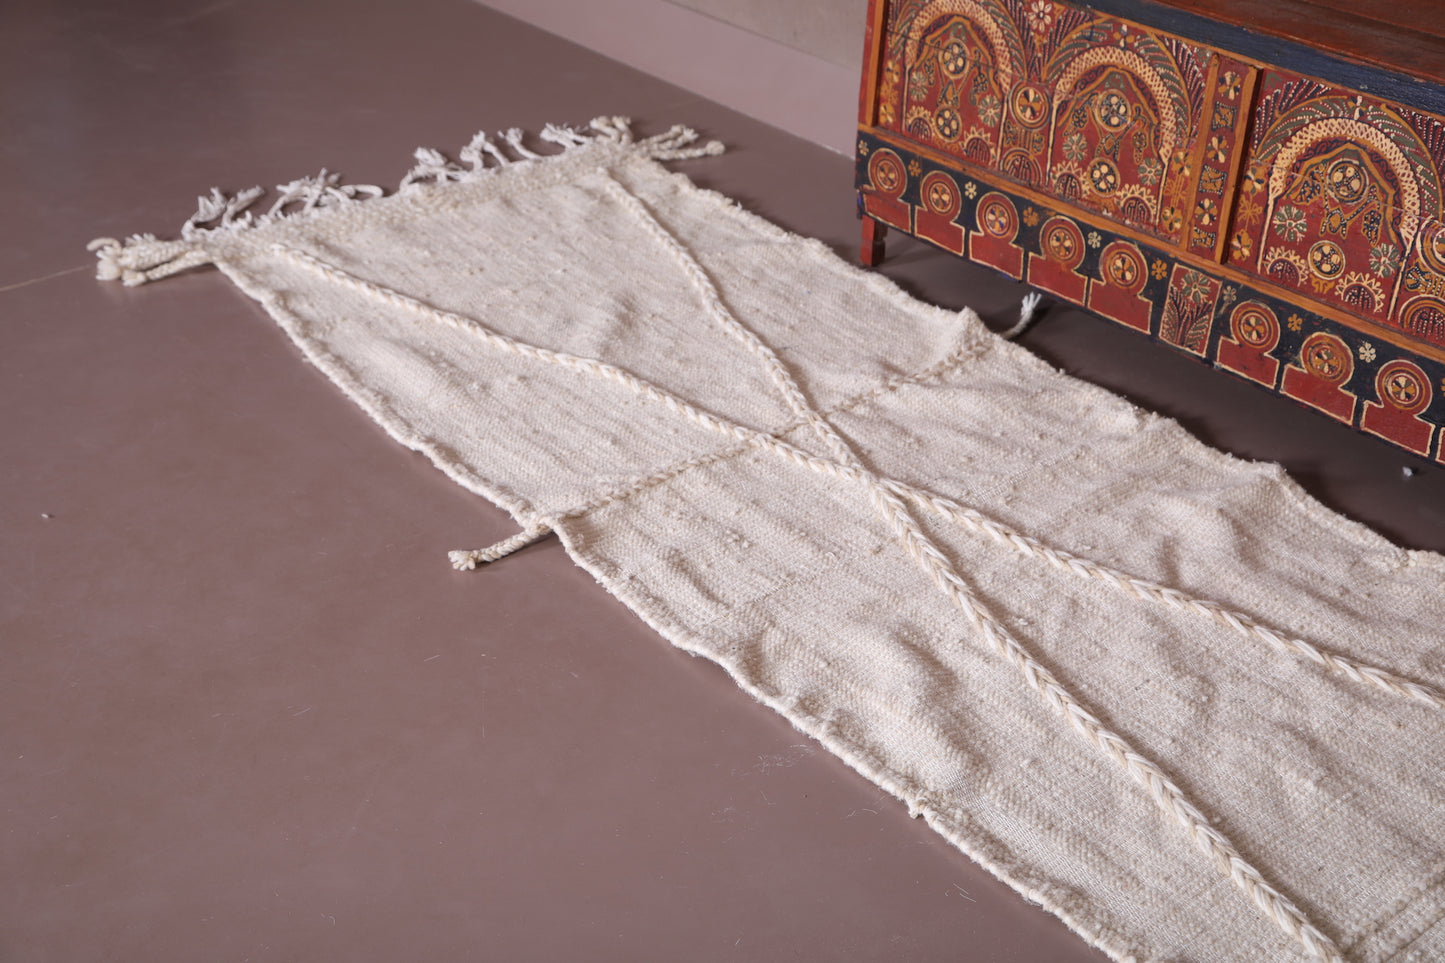 Runner handmade rug, custom moroccan carpet